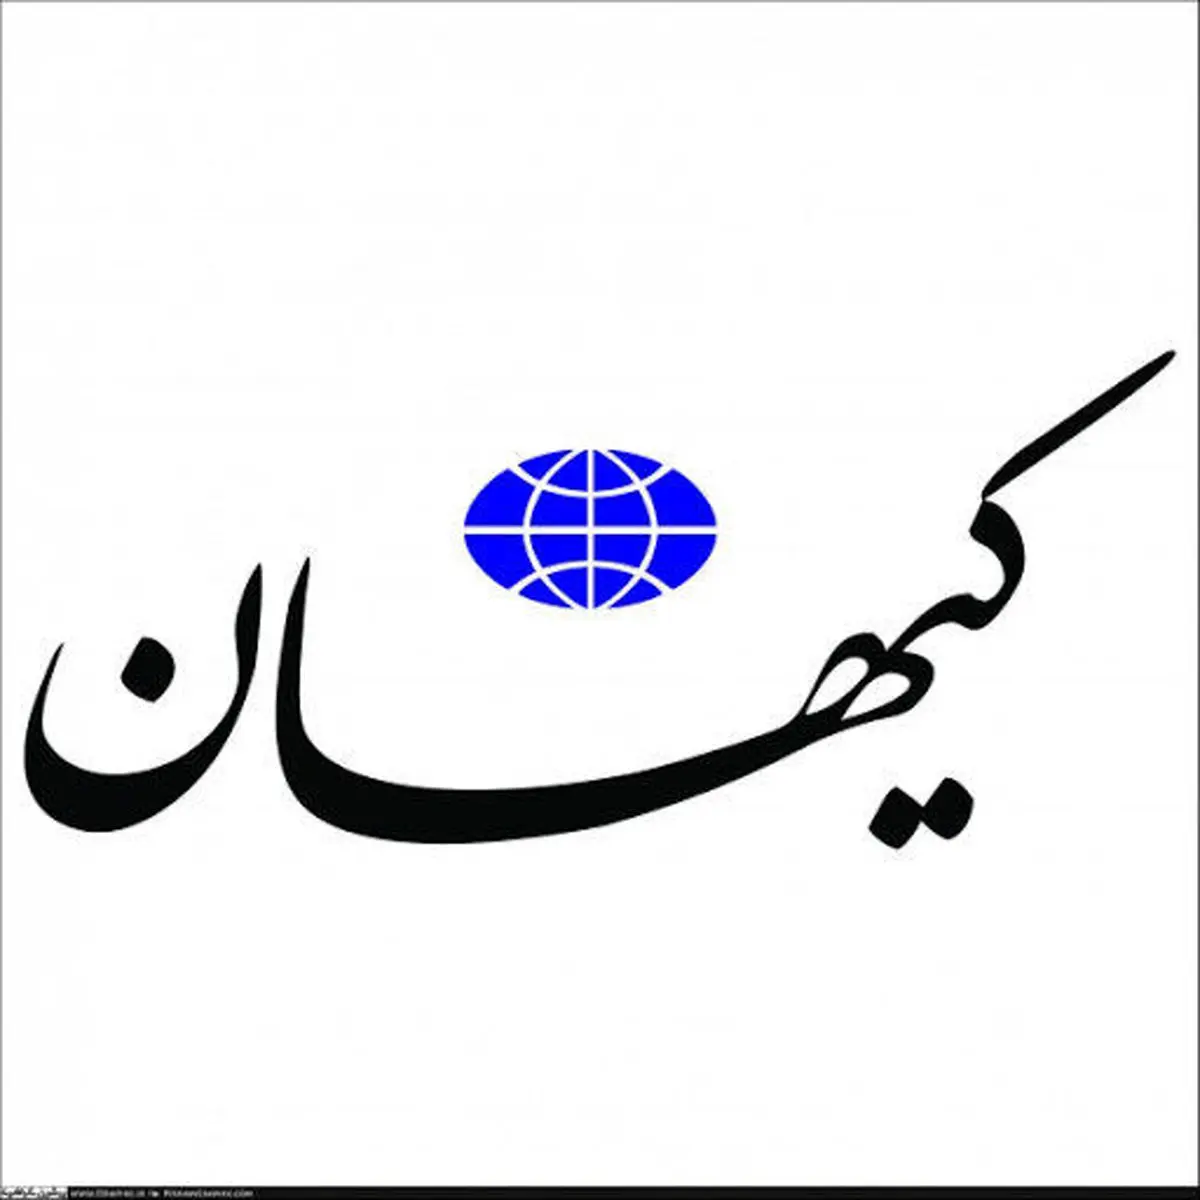  کیهان  ، درباره دولت احمدی نژاد اعتراف کرد 